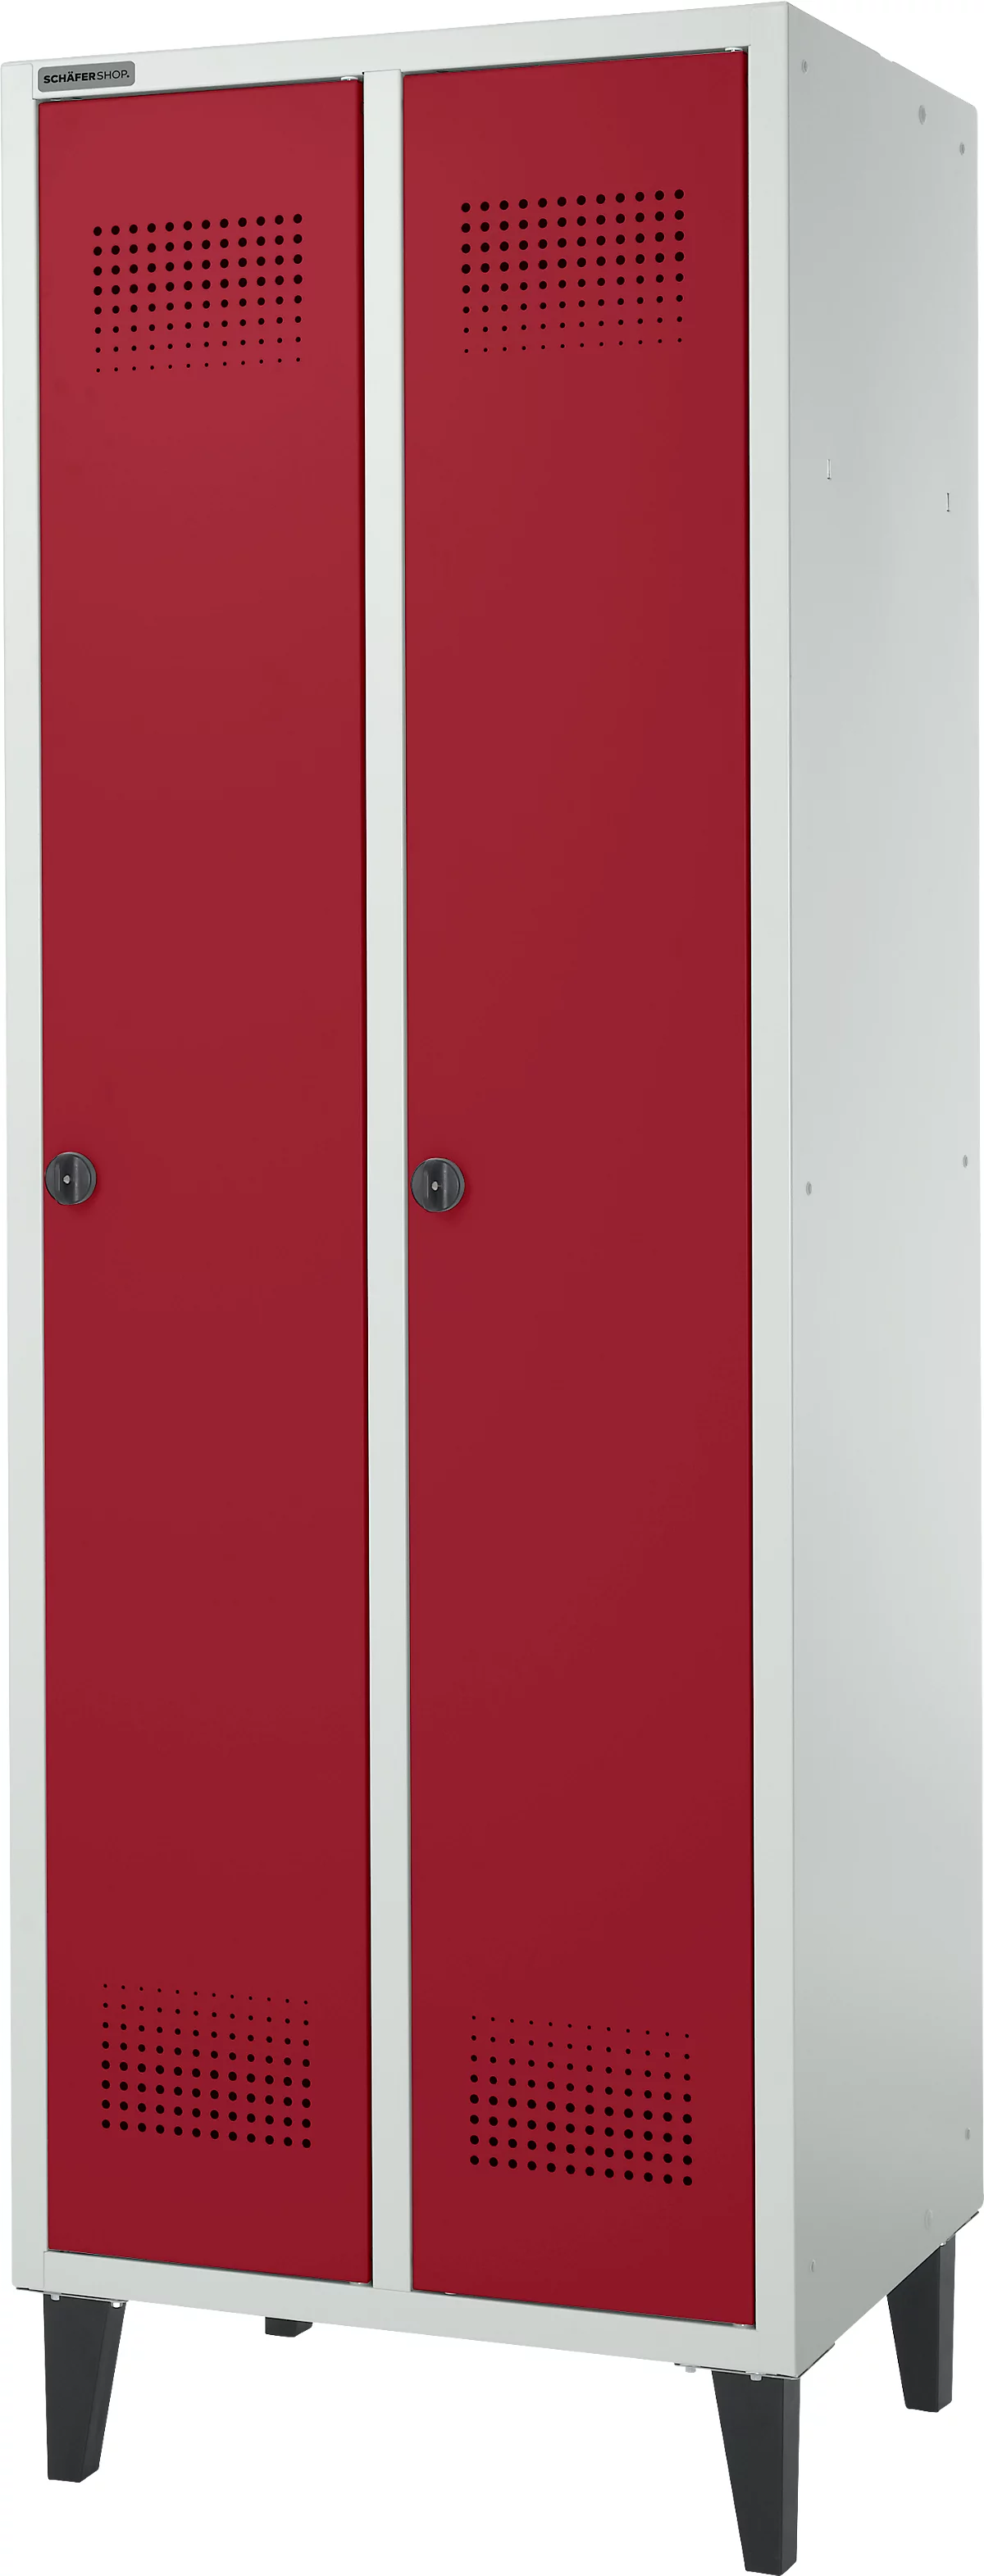 Schäfer Shop Genius Armario independiente, 2 compartimentos, ancho 630 x fondo 500 x alto 1850 mm, cerradura de seguridad, gris claro/rojo